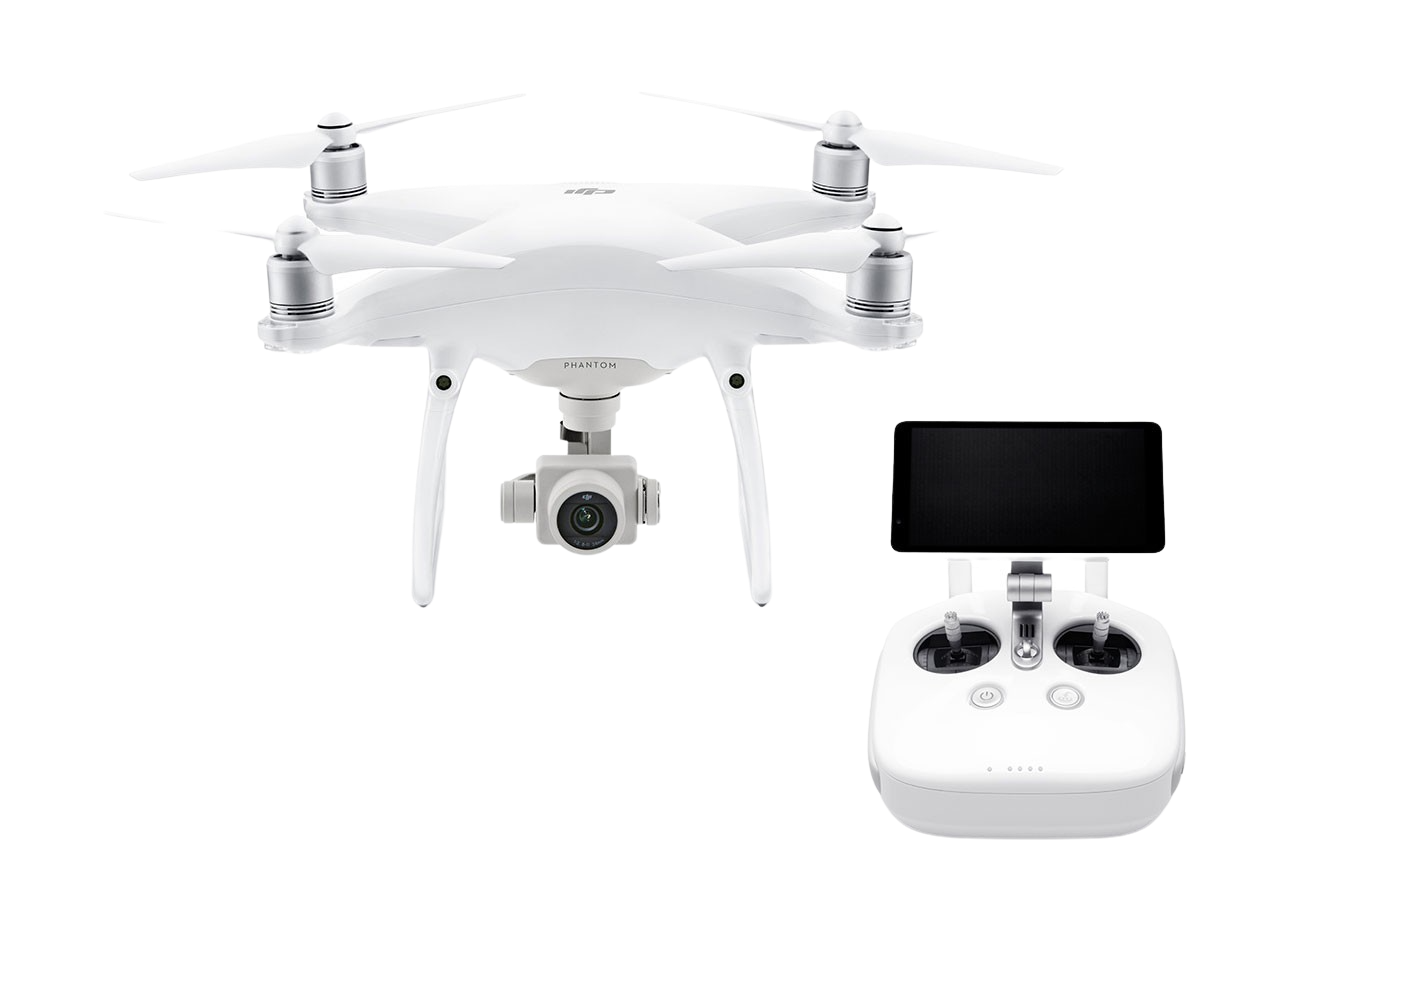 DJI Phantom 4 Pro+ V2.0 Quadcopter Drone With 5.5